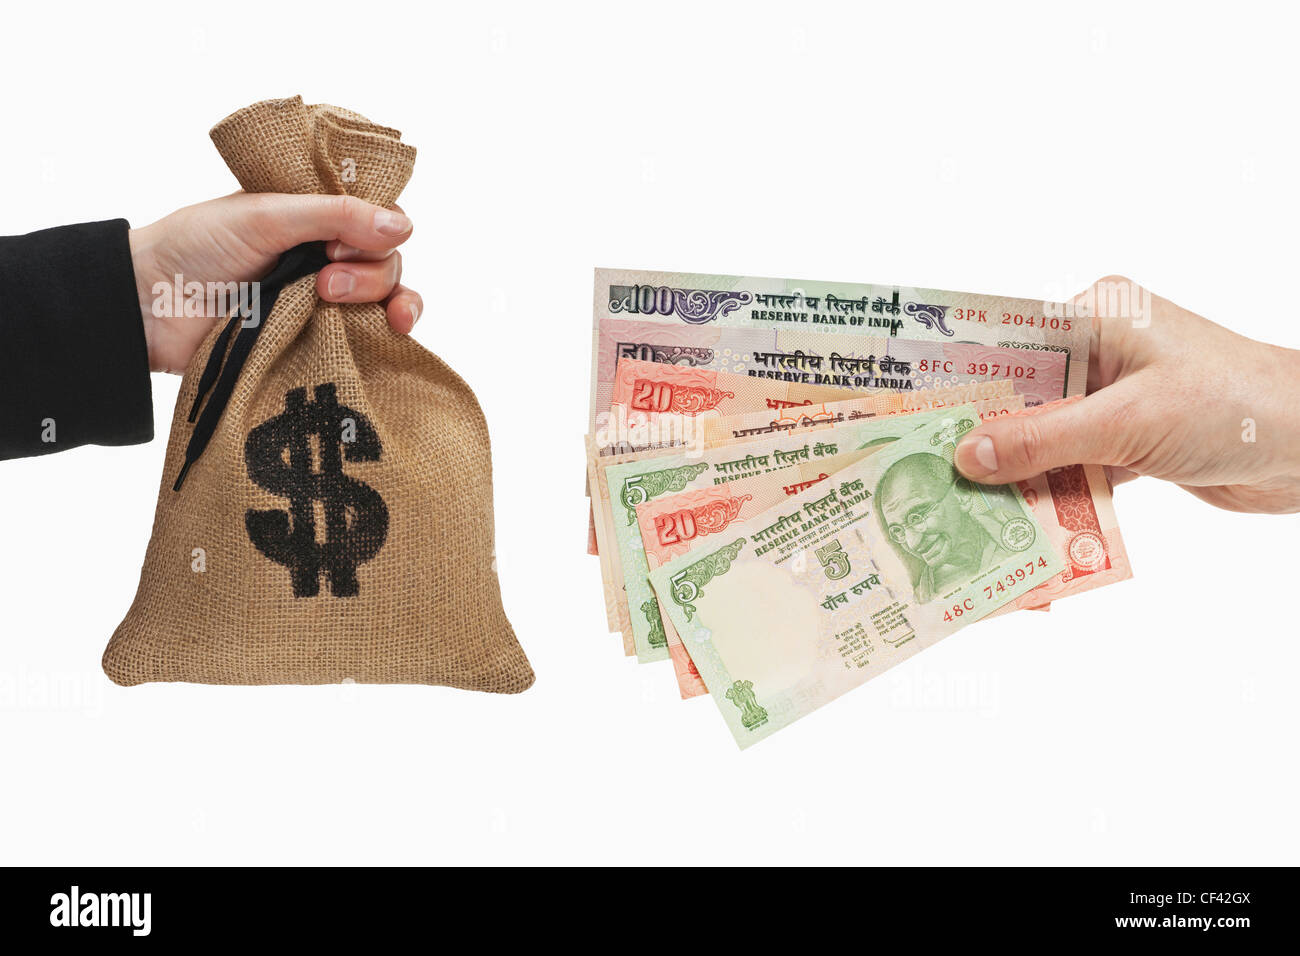 Viele verschiedene indische Rupie Rechnungen sind in der Hand gehalten. Auf der anderen Seite ist ein Geldbeutel mit US-Dollar-Währung-Zeichen. Stockfoto